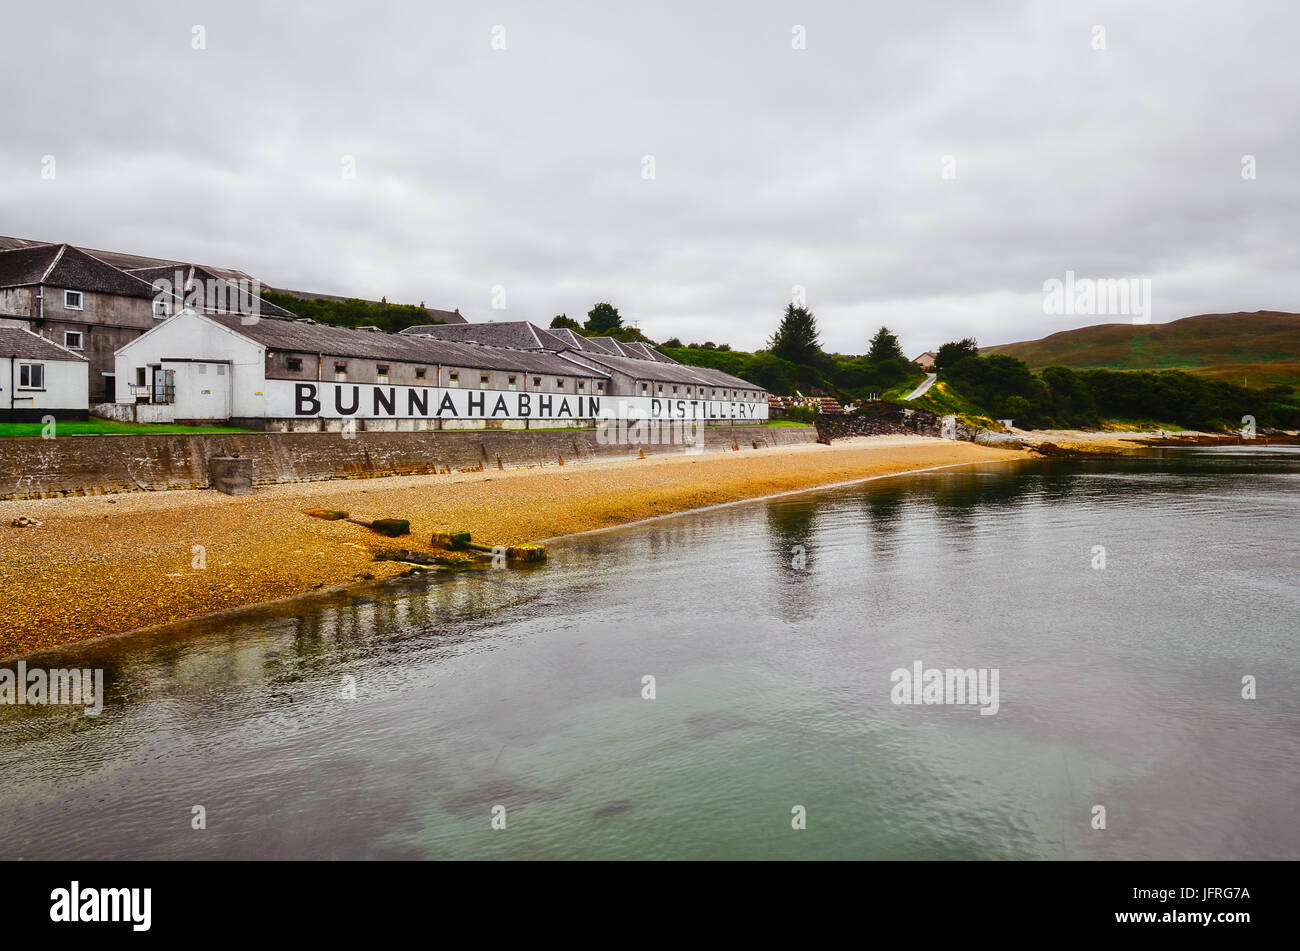 ISLAY, Regno Unito - 26 August 2013: Bunnahabhain distillery fabbrica dal mare, Islay, Regno Unito Foto Stock